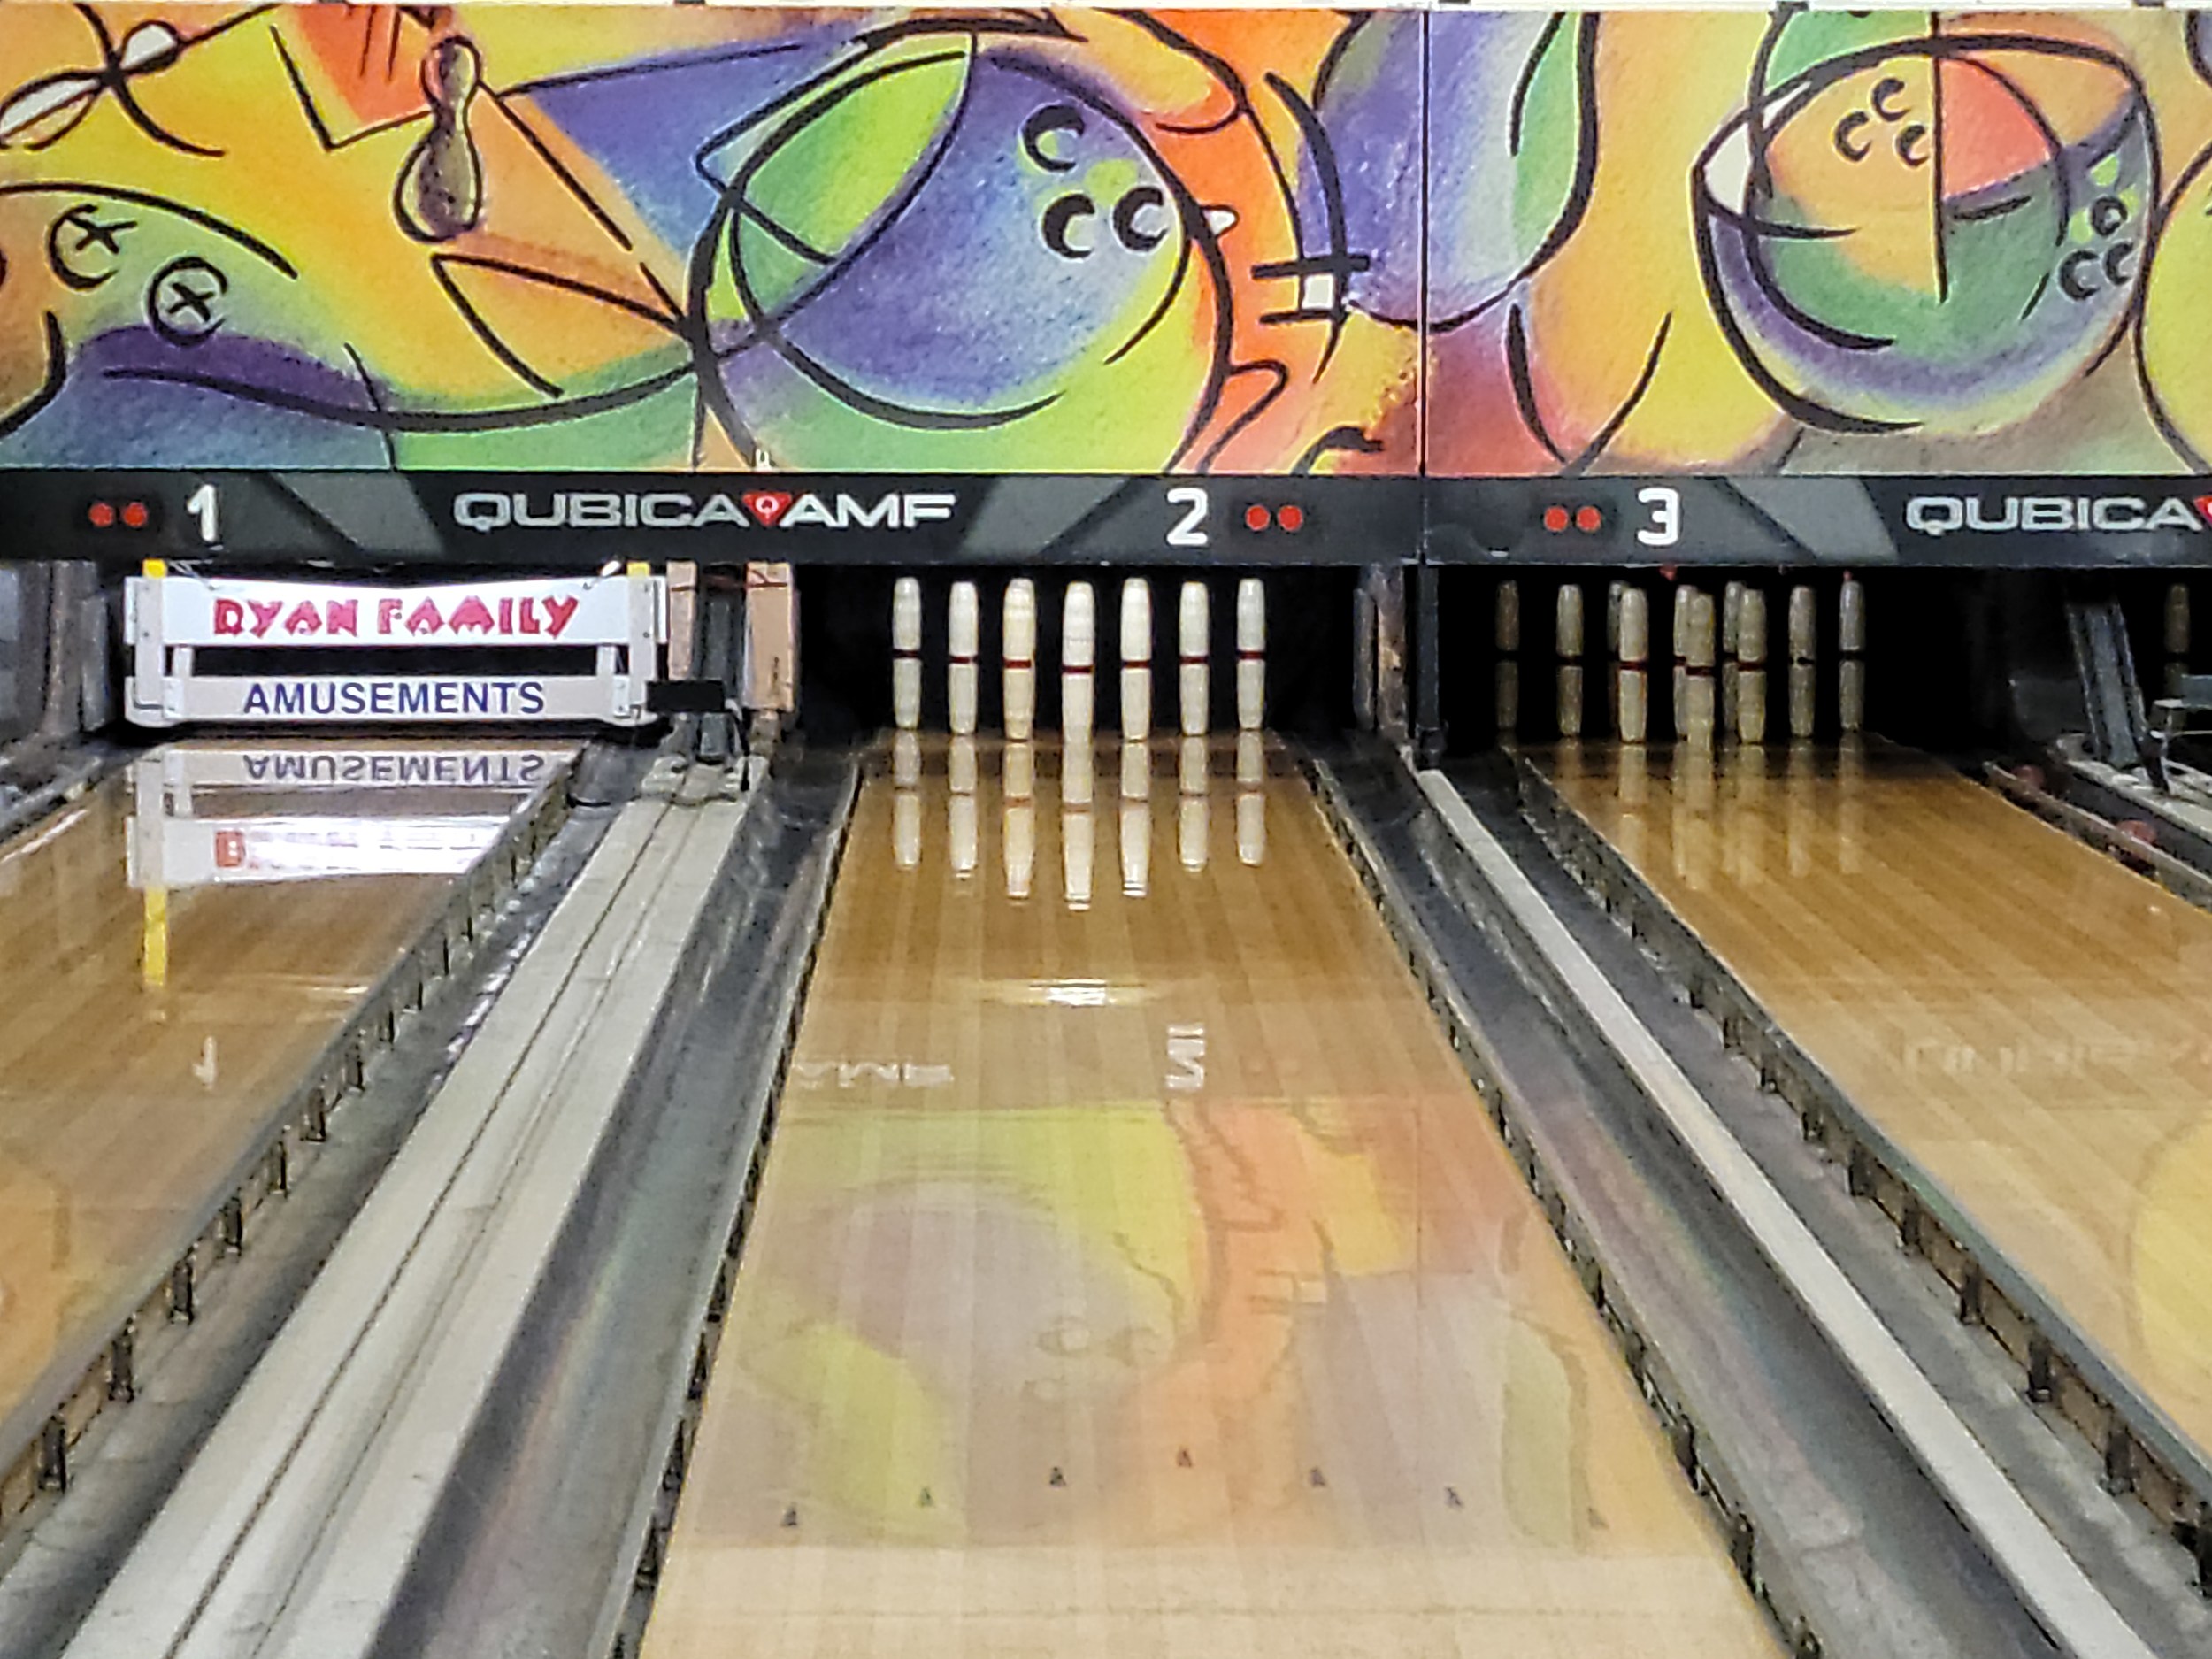 amateur bowling tournaments east region